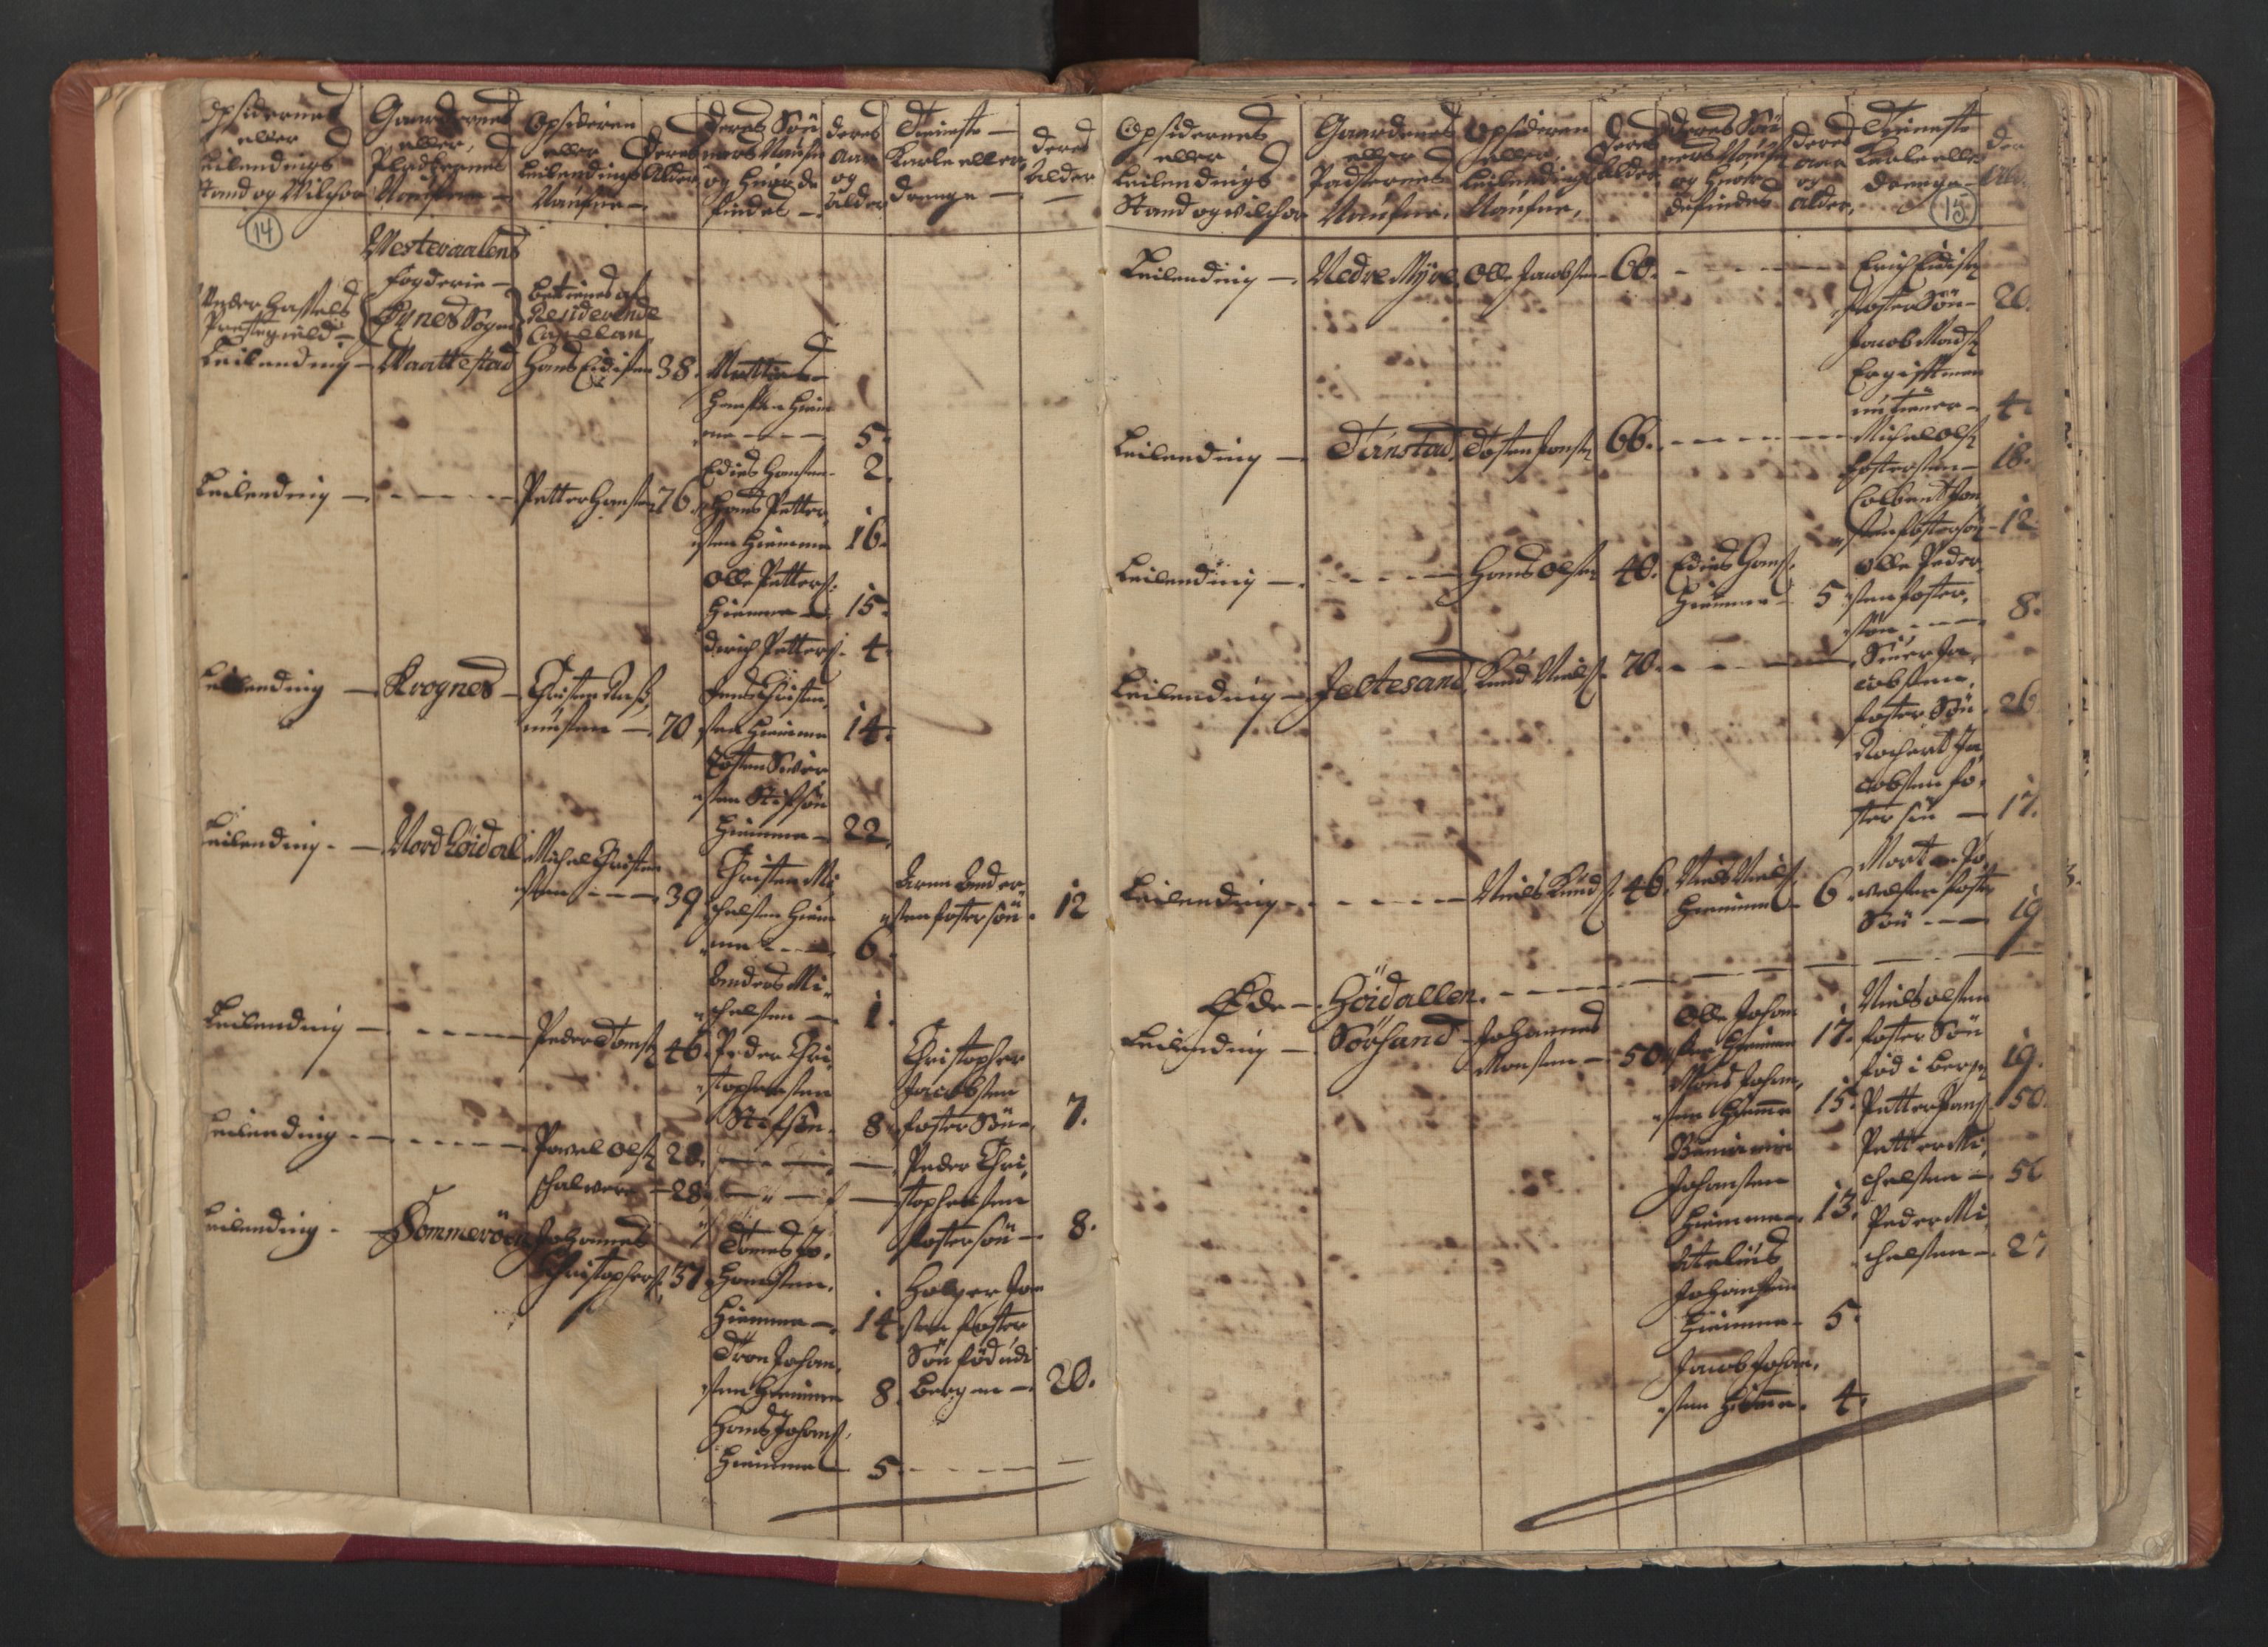 RA, Census (manntall) 1701, no. 18: Vesterålen, Andenes and Lofoten fogderi, 1701, p. 14-15